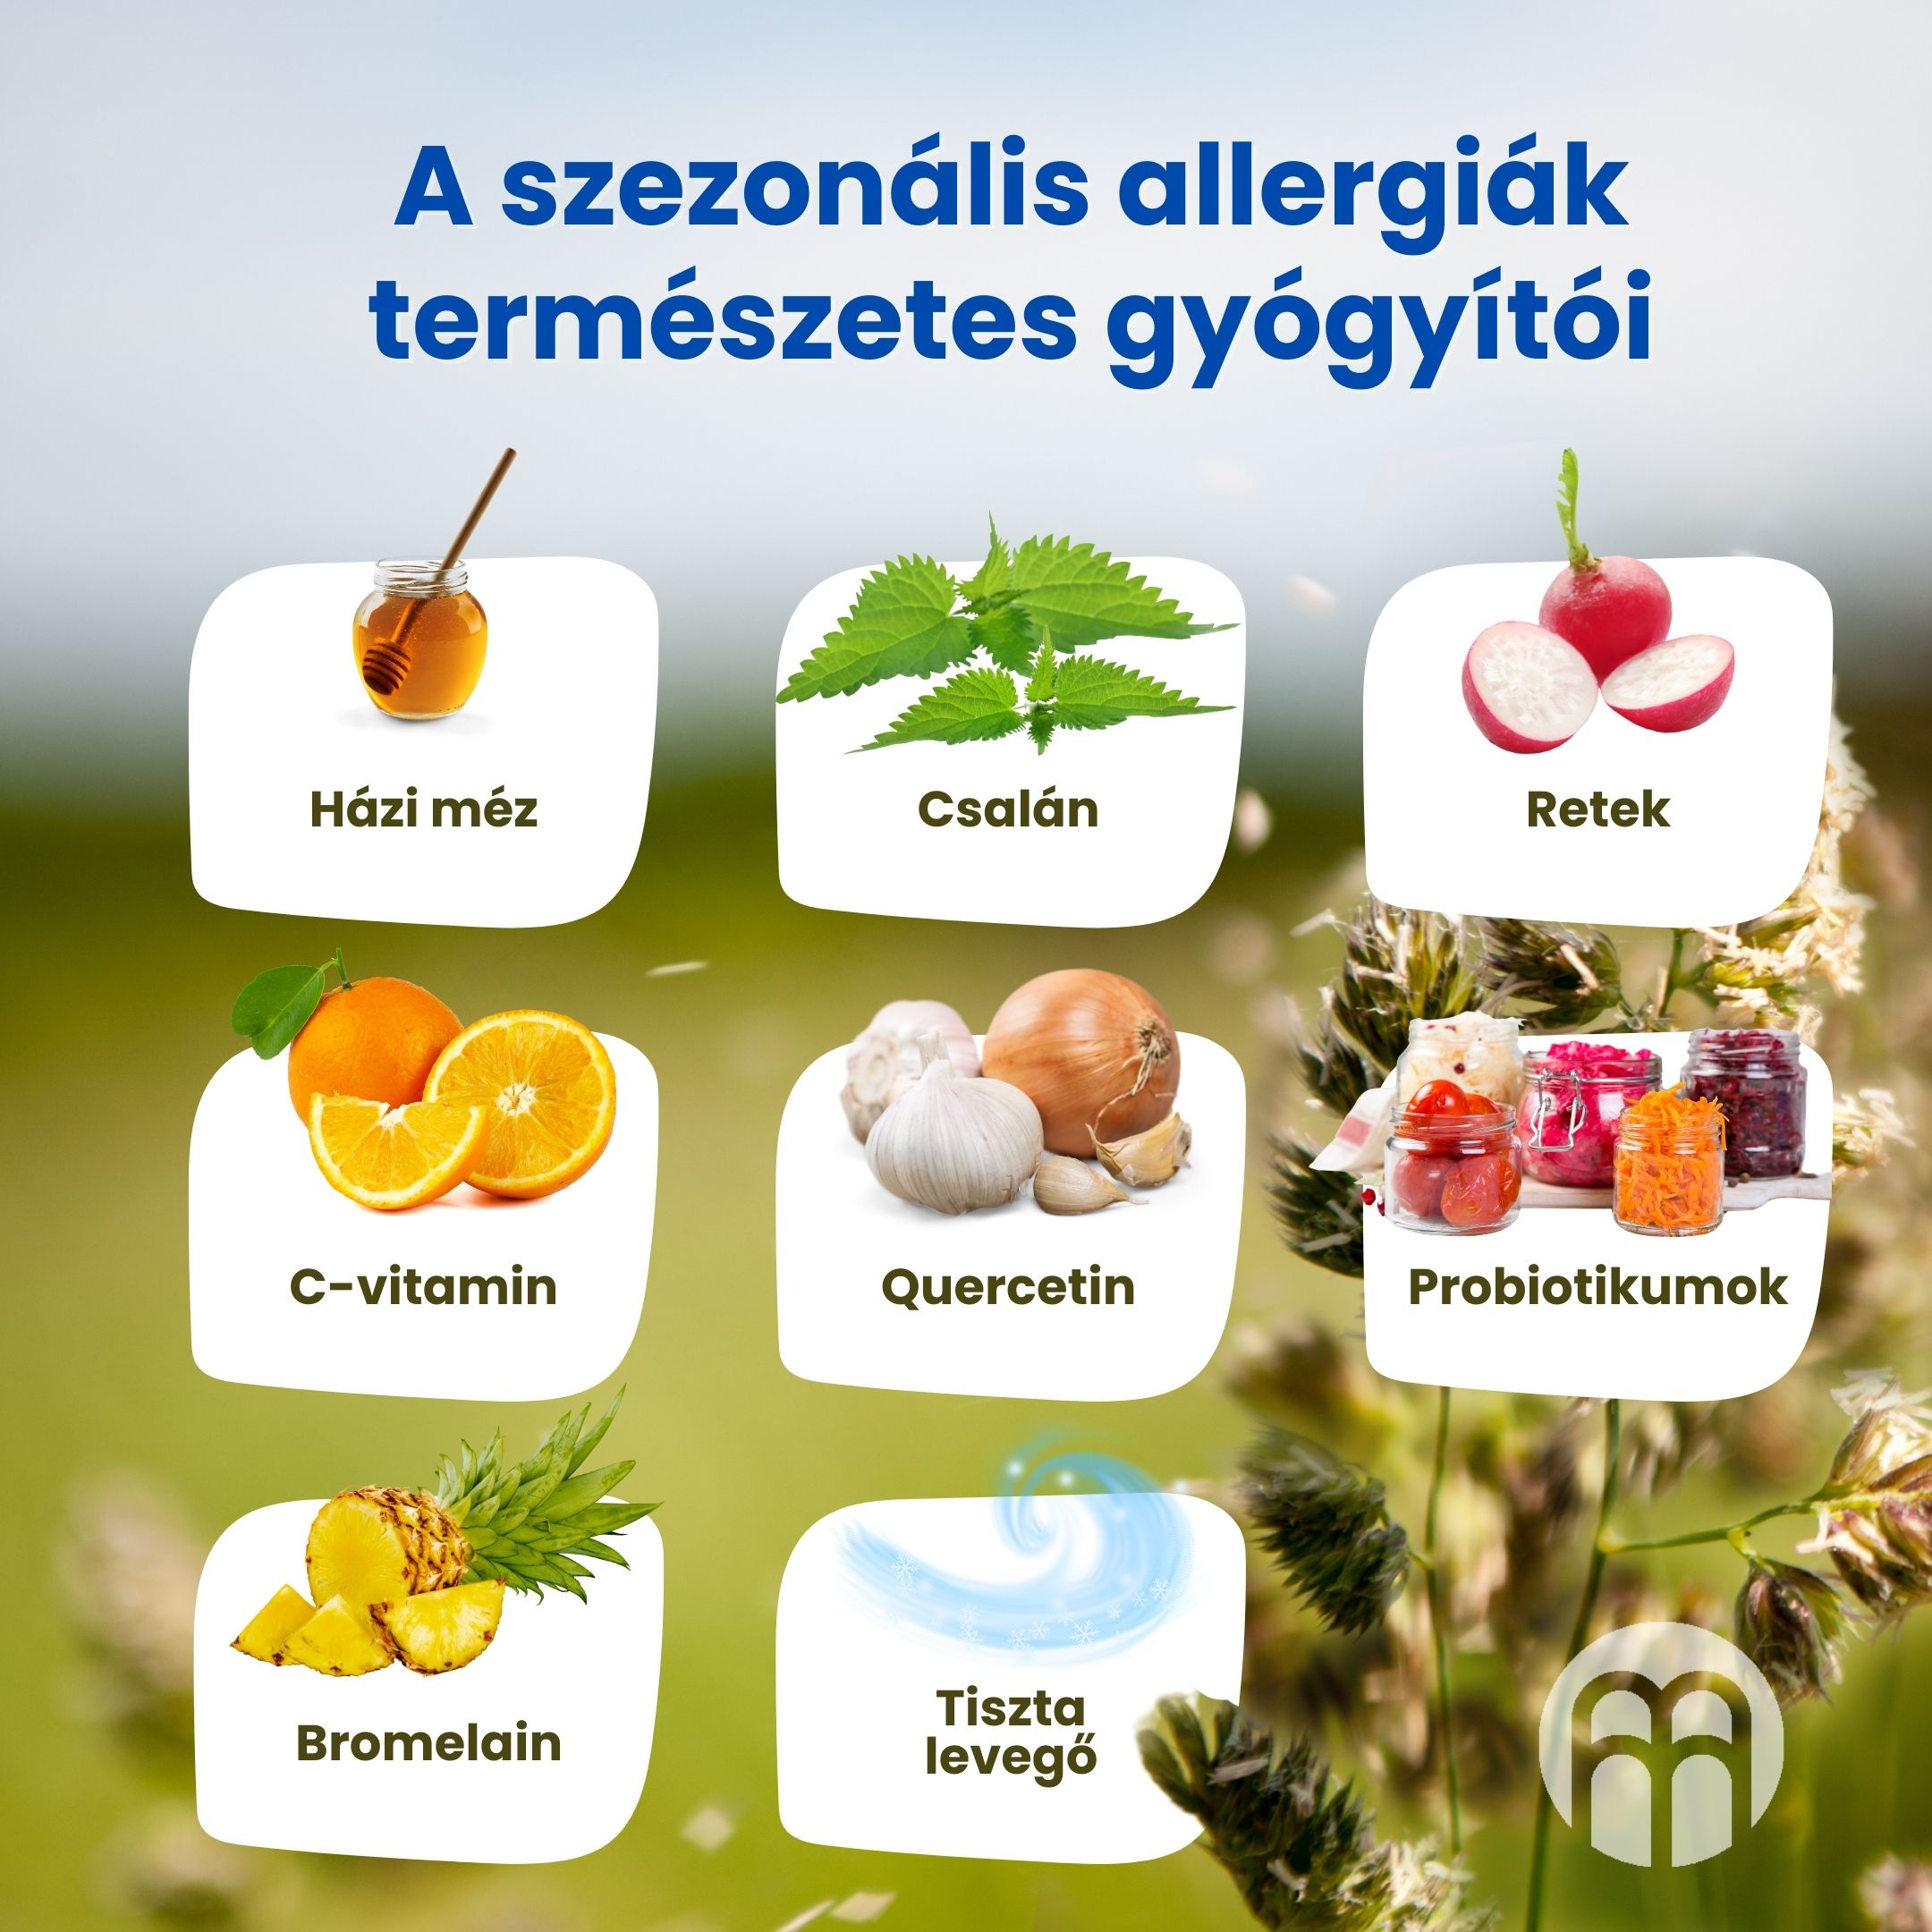 (Maďarština) Přírodní léčitelé  sezónních alergií